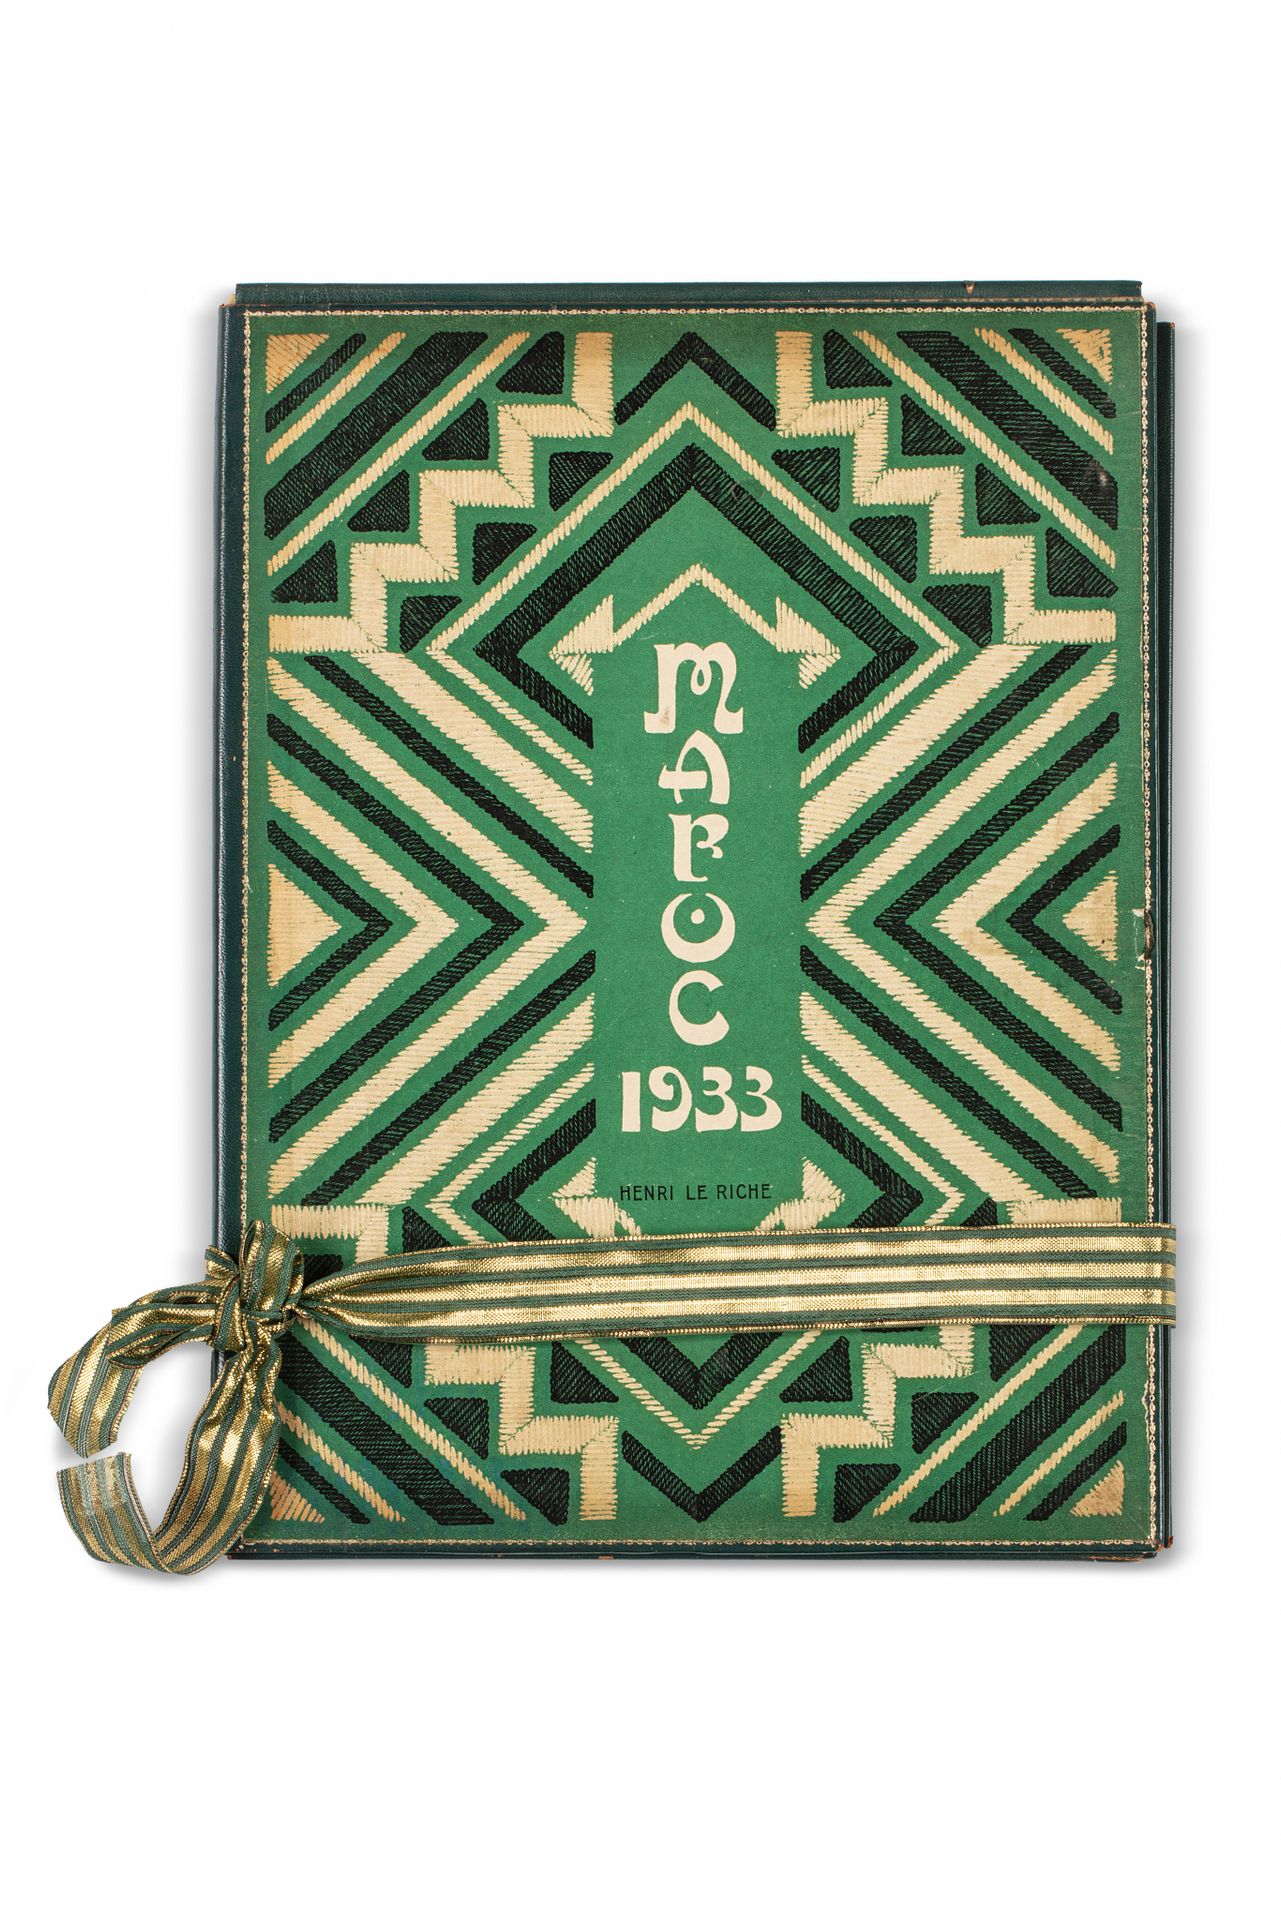 LE RICHE (Henri). Marokko, 1932-1933

Reisetagebuch, illustriert mit dreißig sch&hellip;